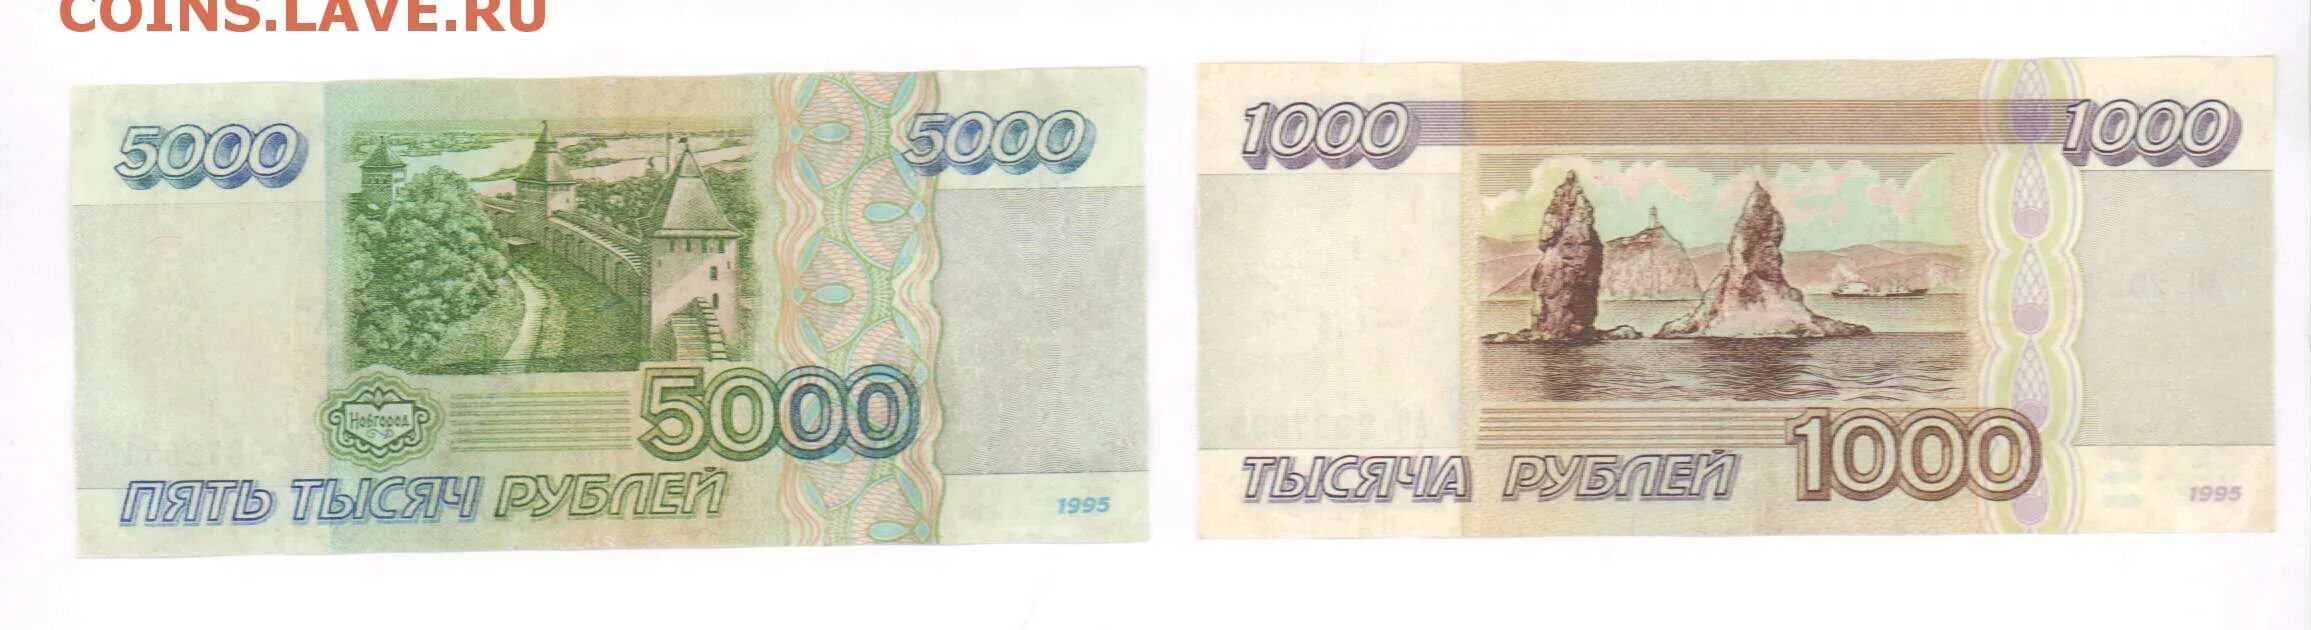 5000 рублей 1995. 5000 Рублей 1995 года. 5000 Тысяч 1995. 1000 Рублей реверс. 5000 И 1000 рублей 1995 года.